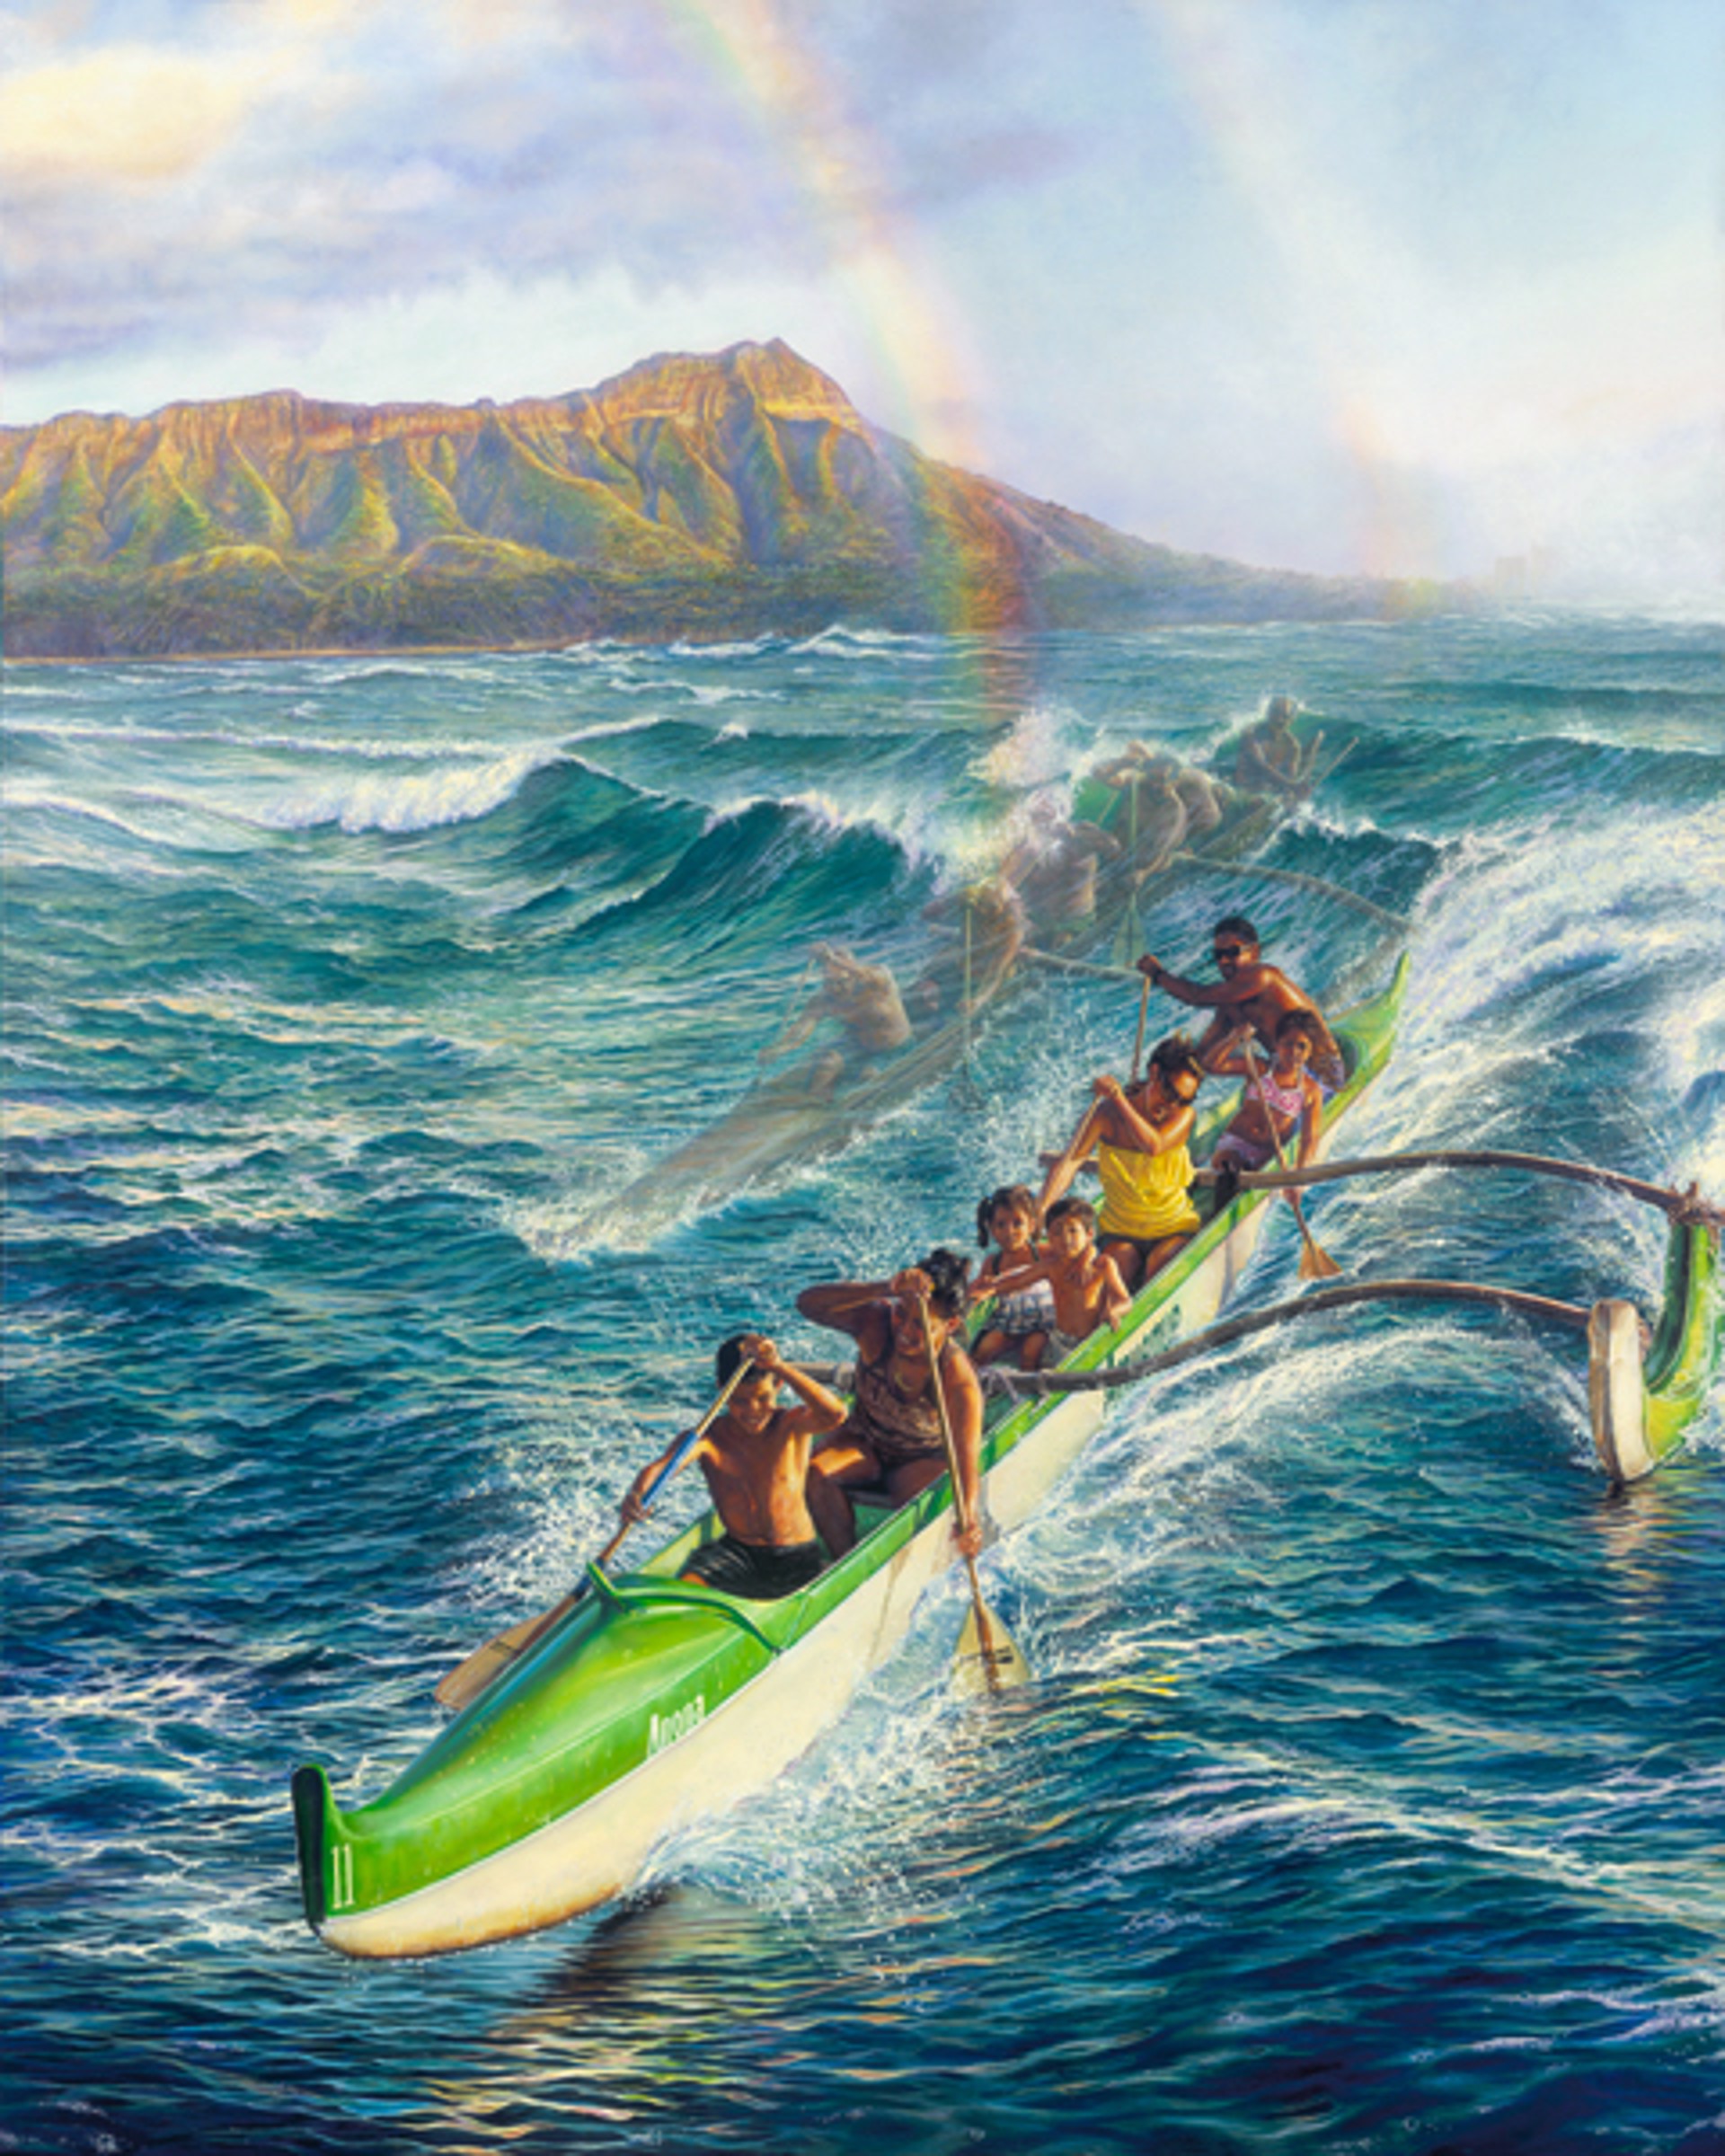 Surfing Canoes - Ke Ano'ano o ke 'Anuenue by Leohone Magno